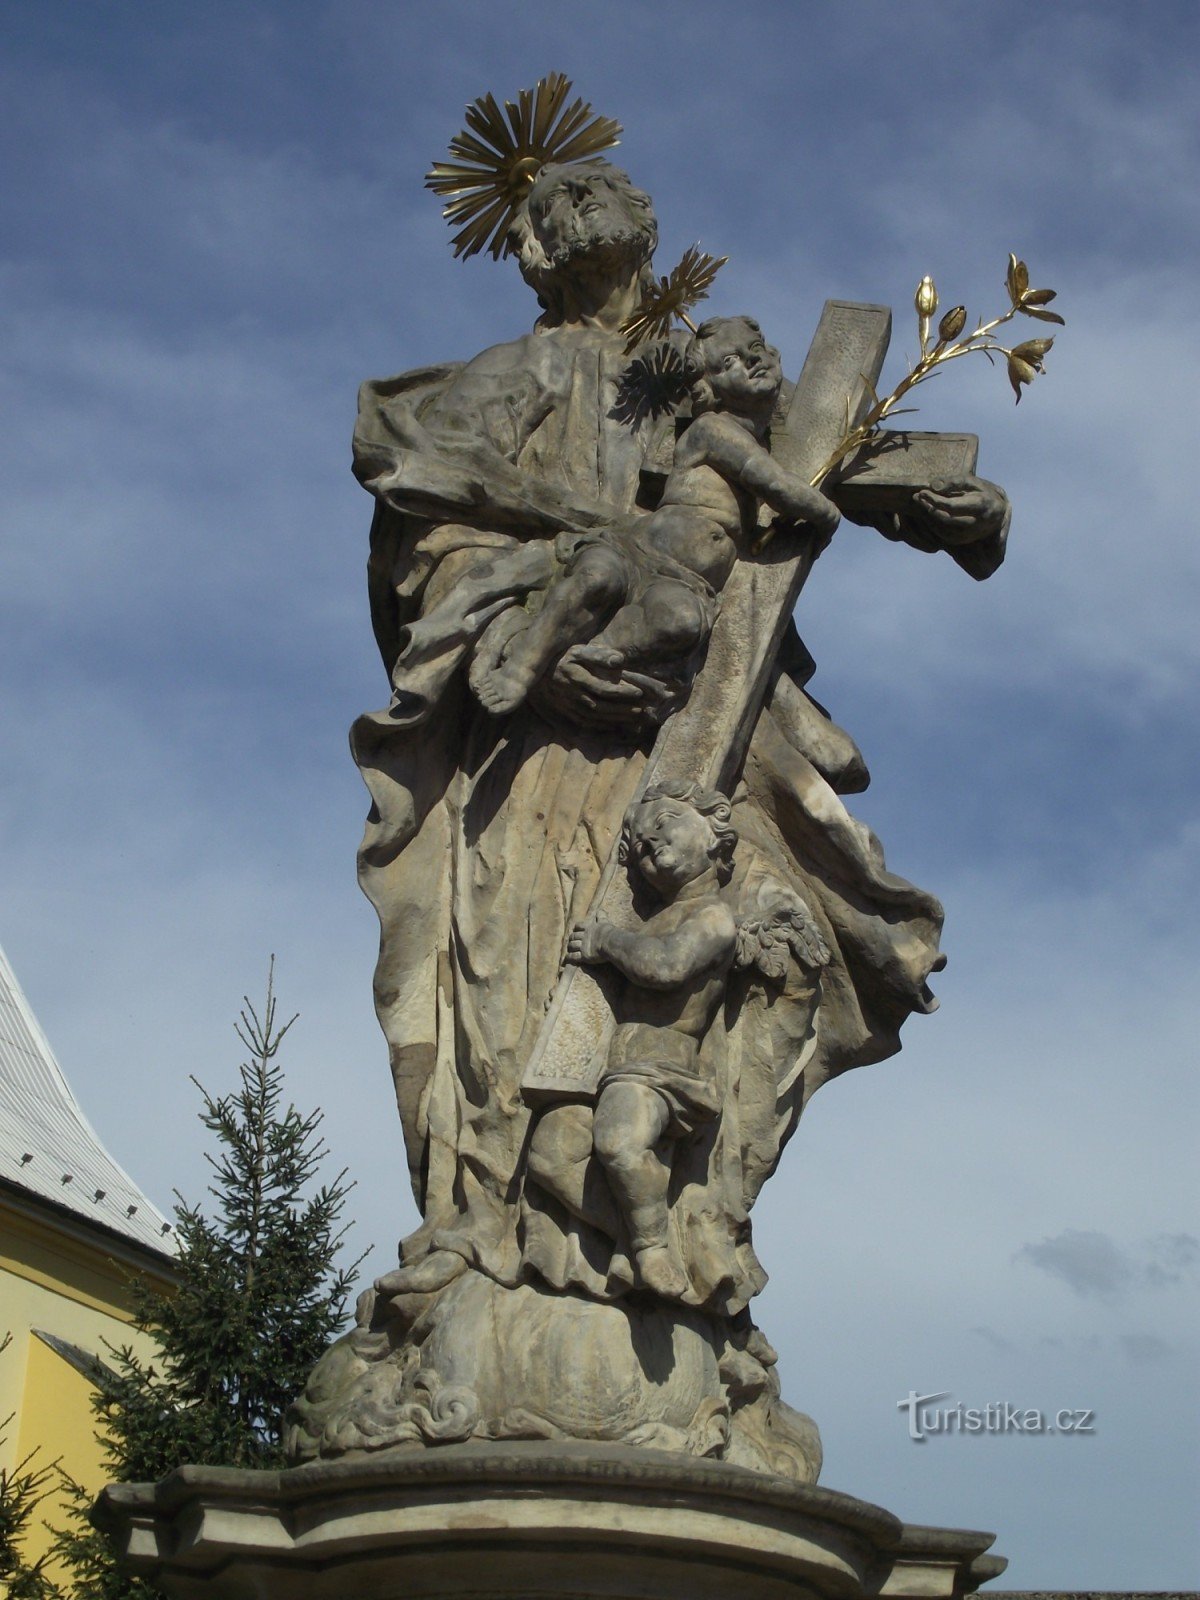 Ruda nad Moravou - la estatua de St. Joseph